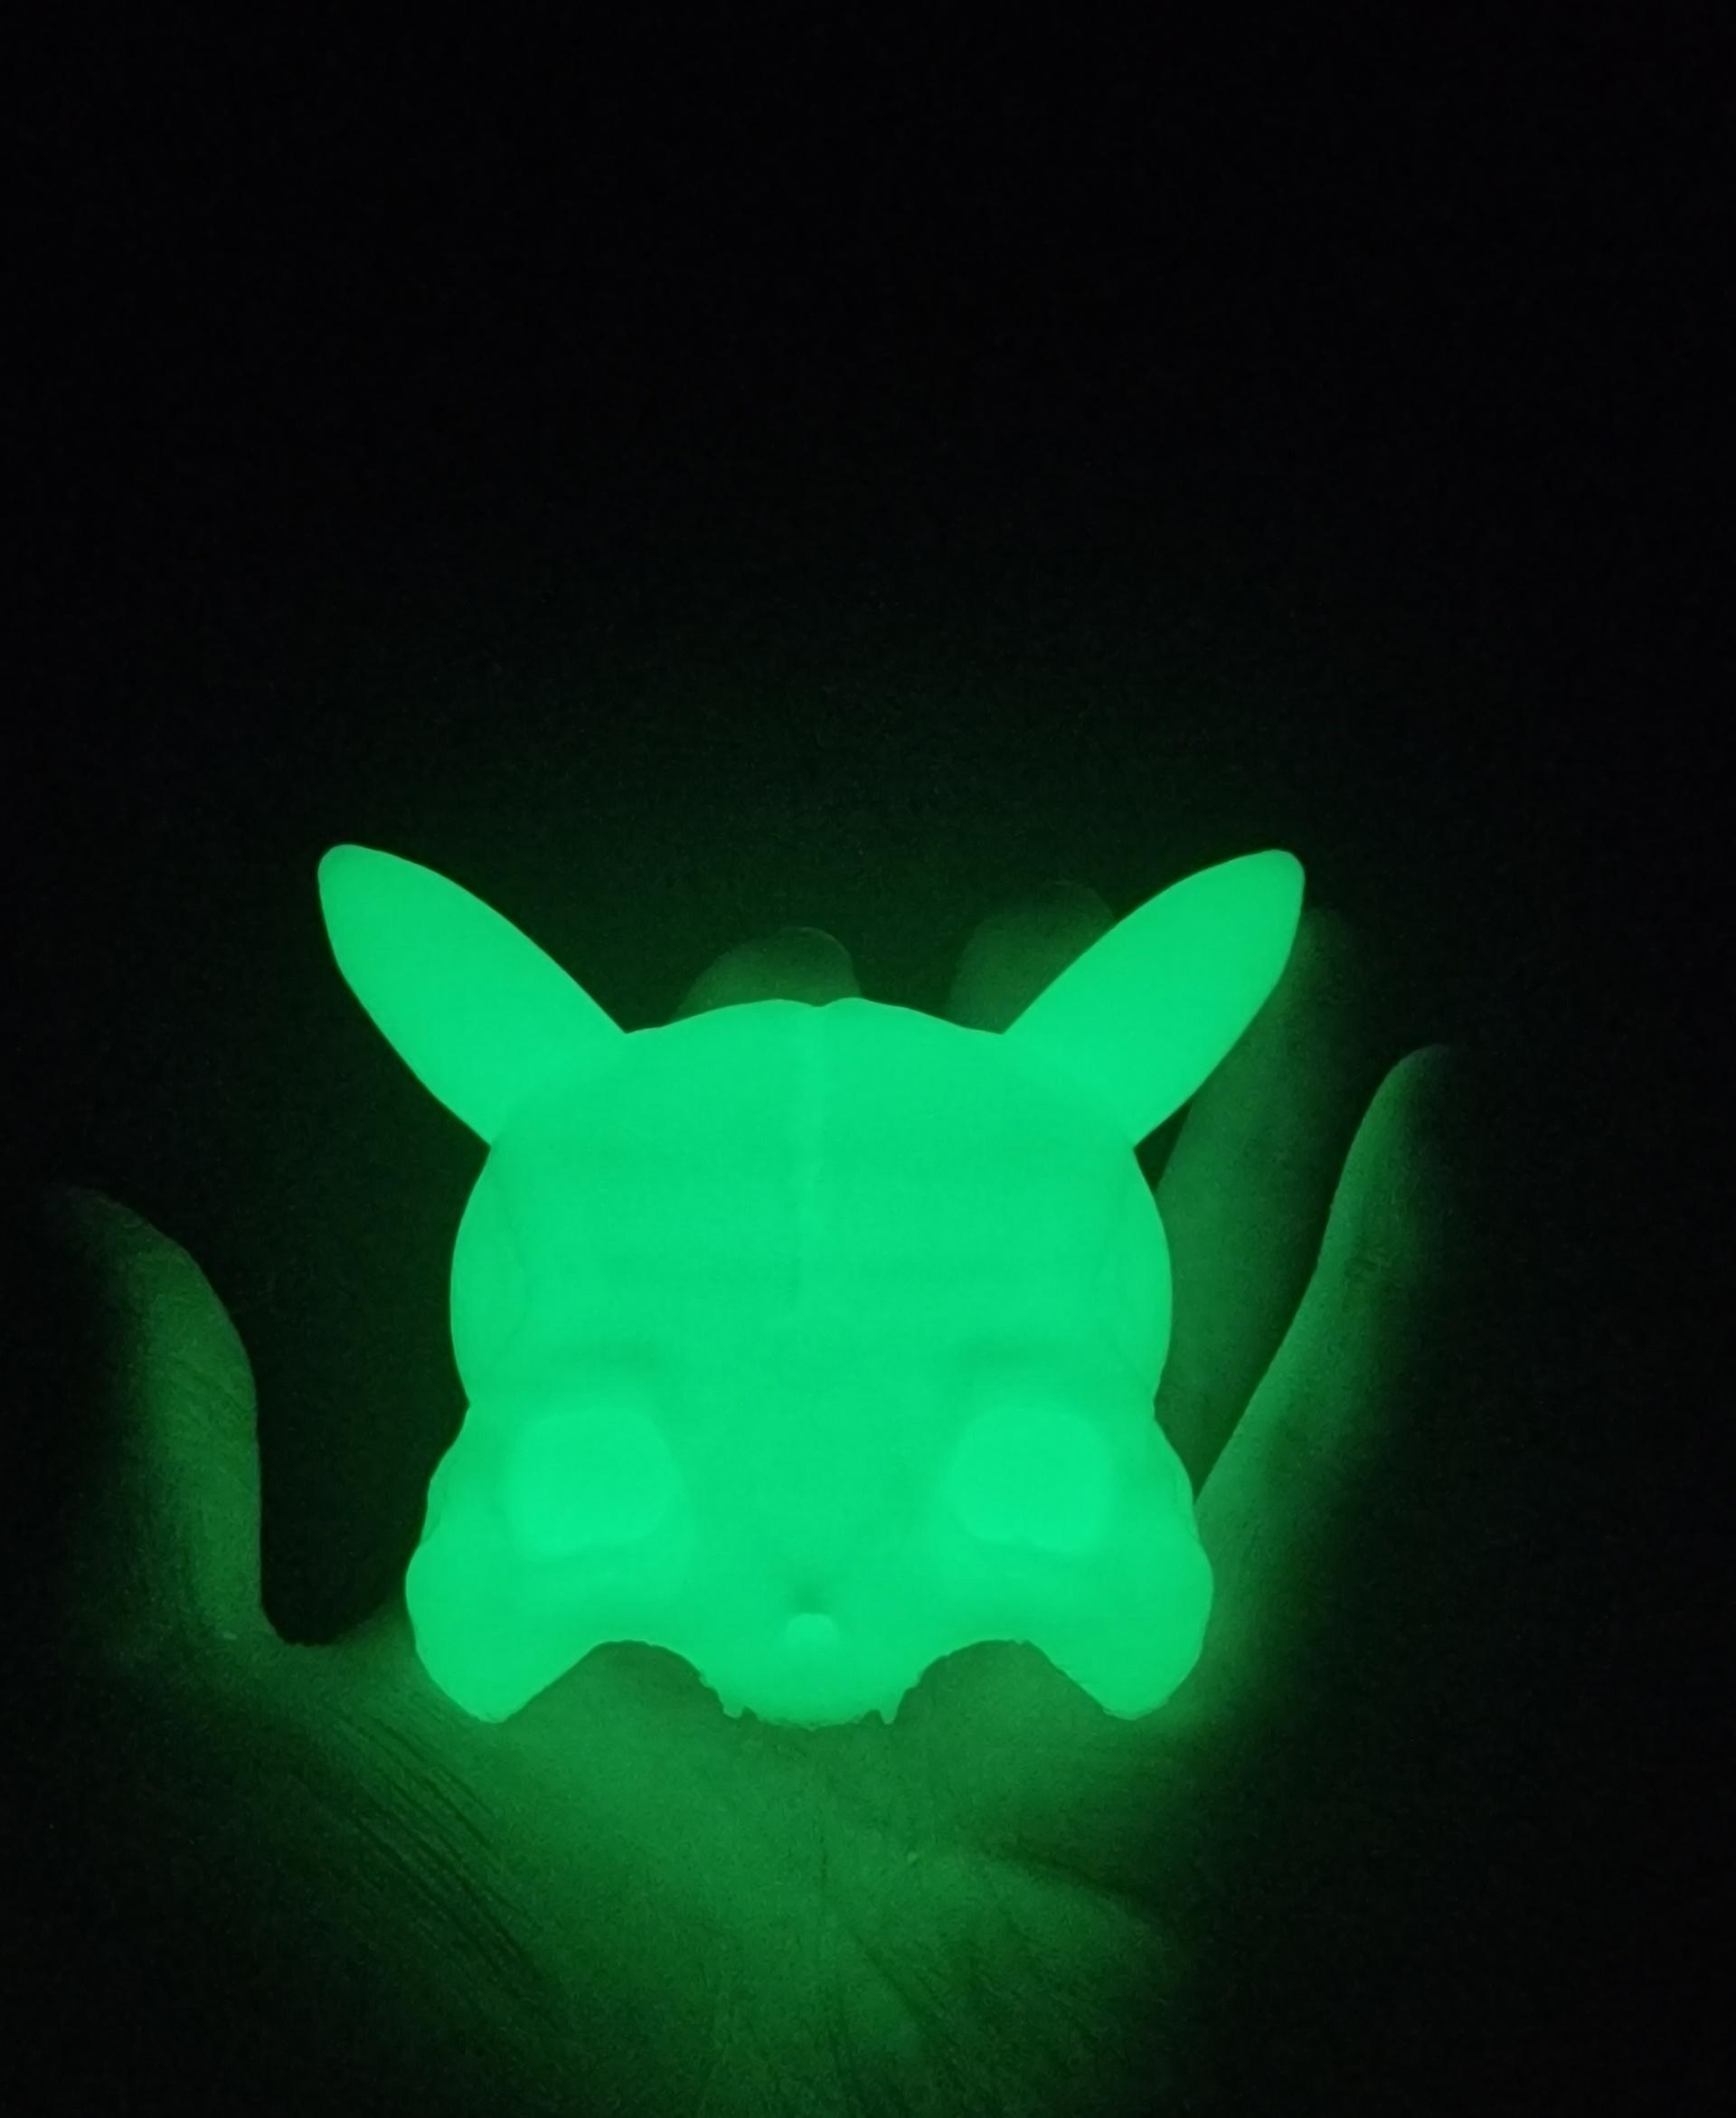 Pikachu Skull - Amazing model i just had to make it glow 😂 - 3d model